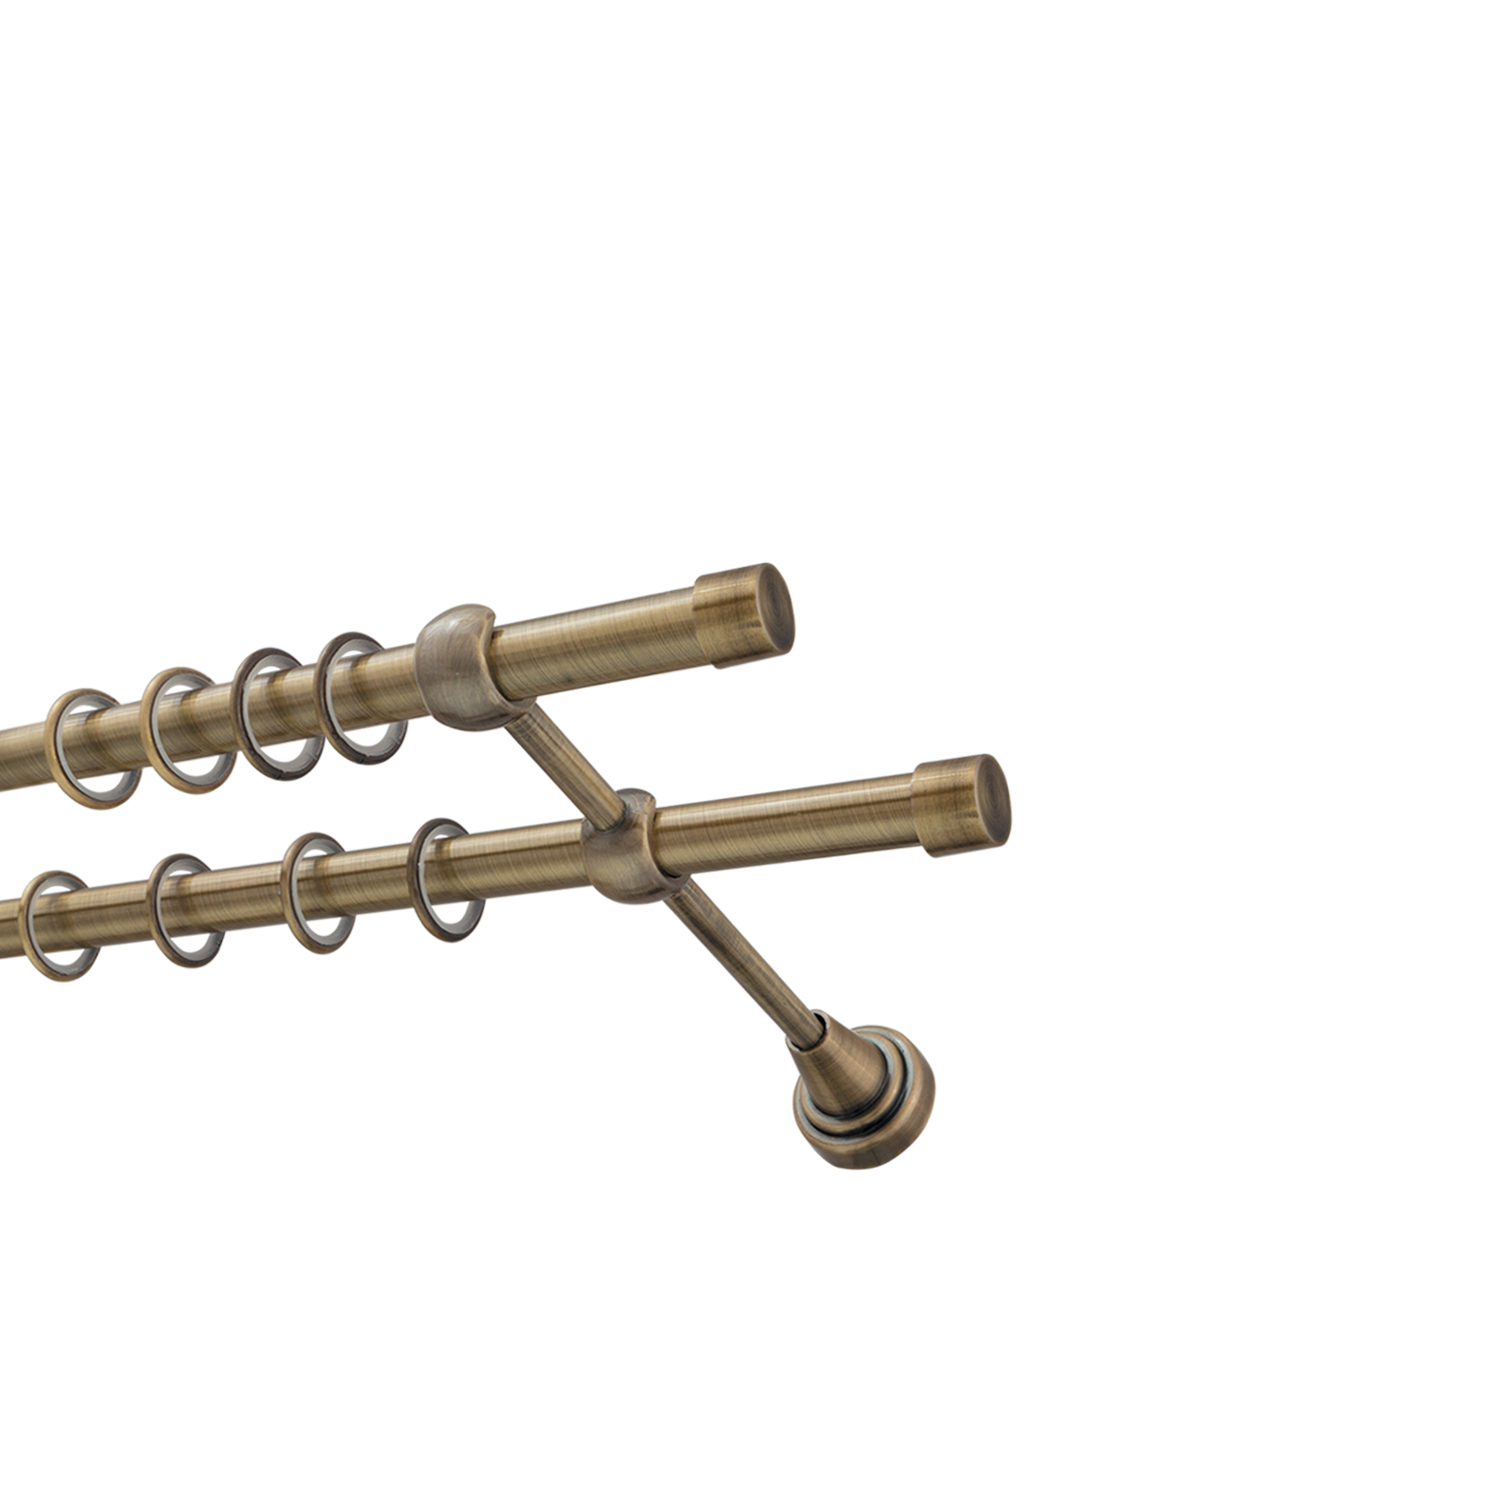 Металлический карниз для штор Заглушка, двухрядный 16/16 мм, бронза, гладкая штанга, длина 300 см - фото Wikidecor.ru